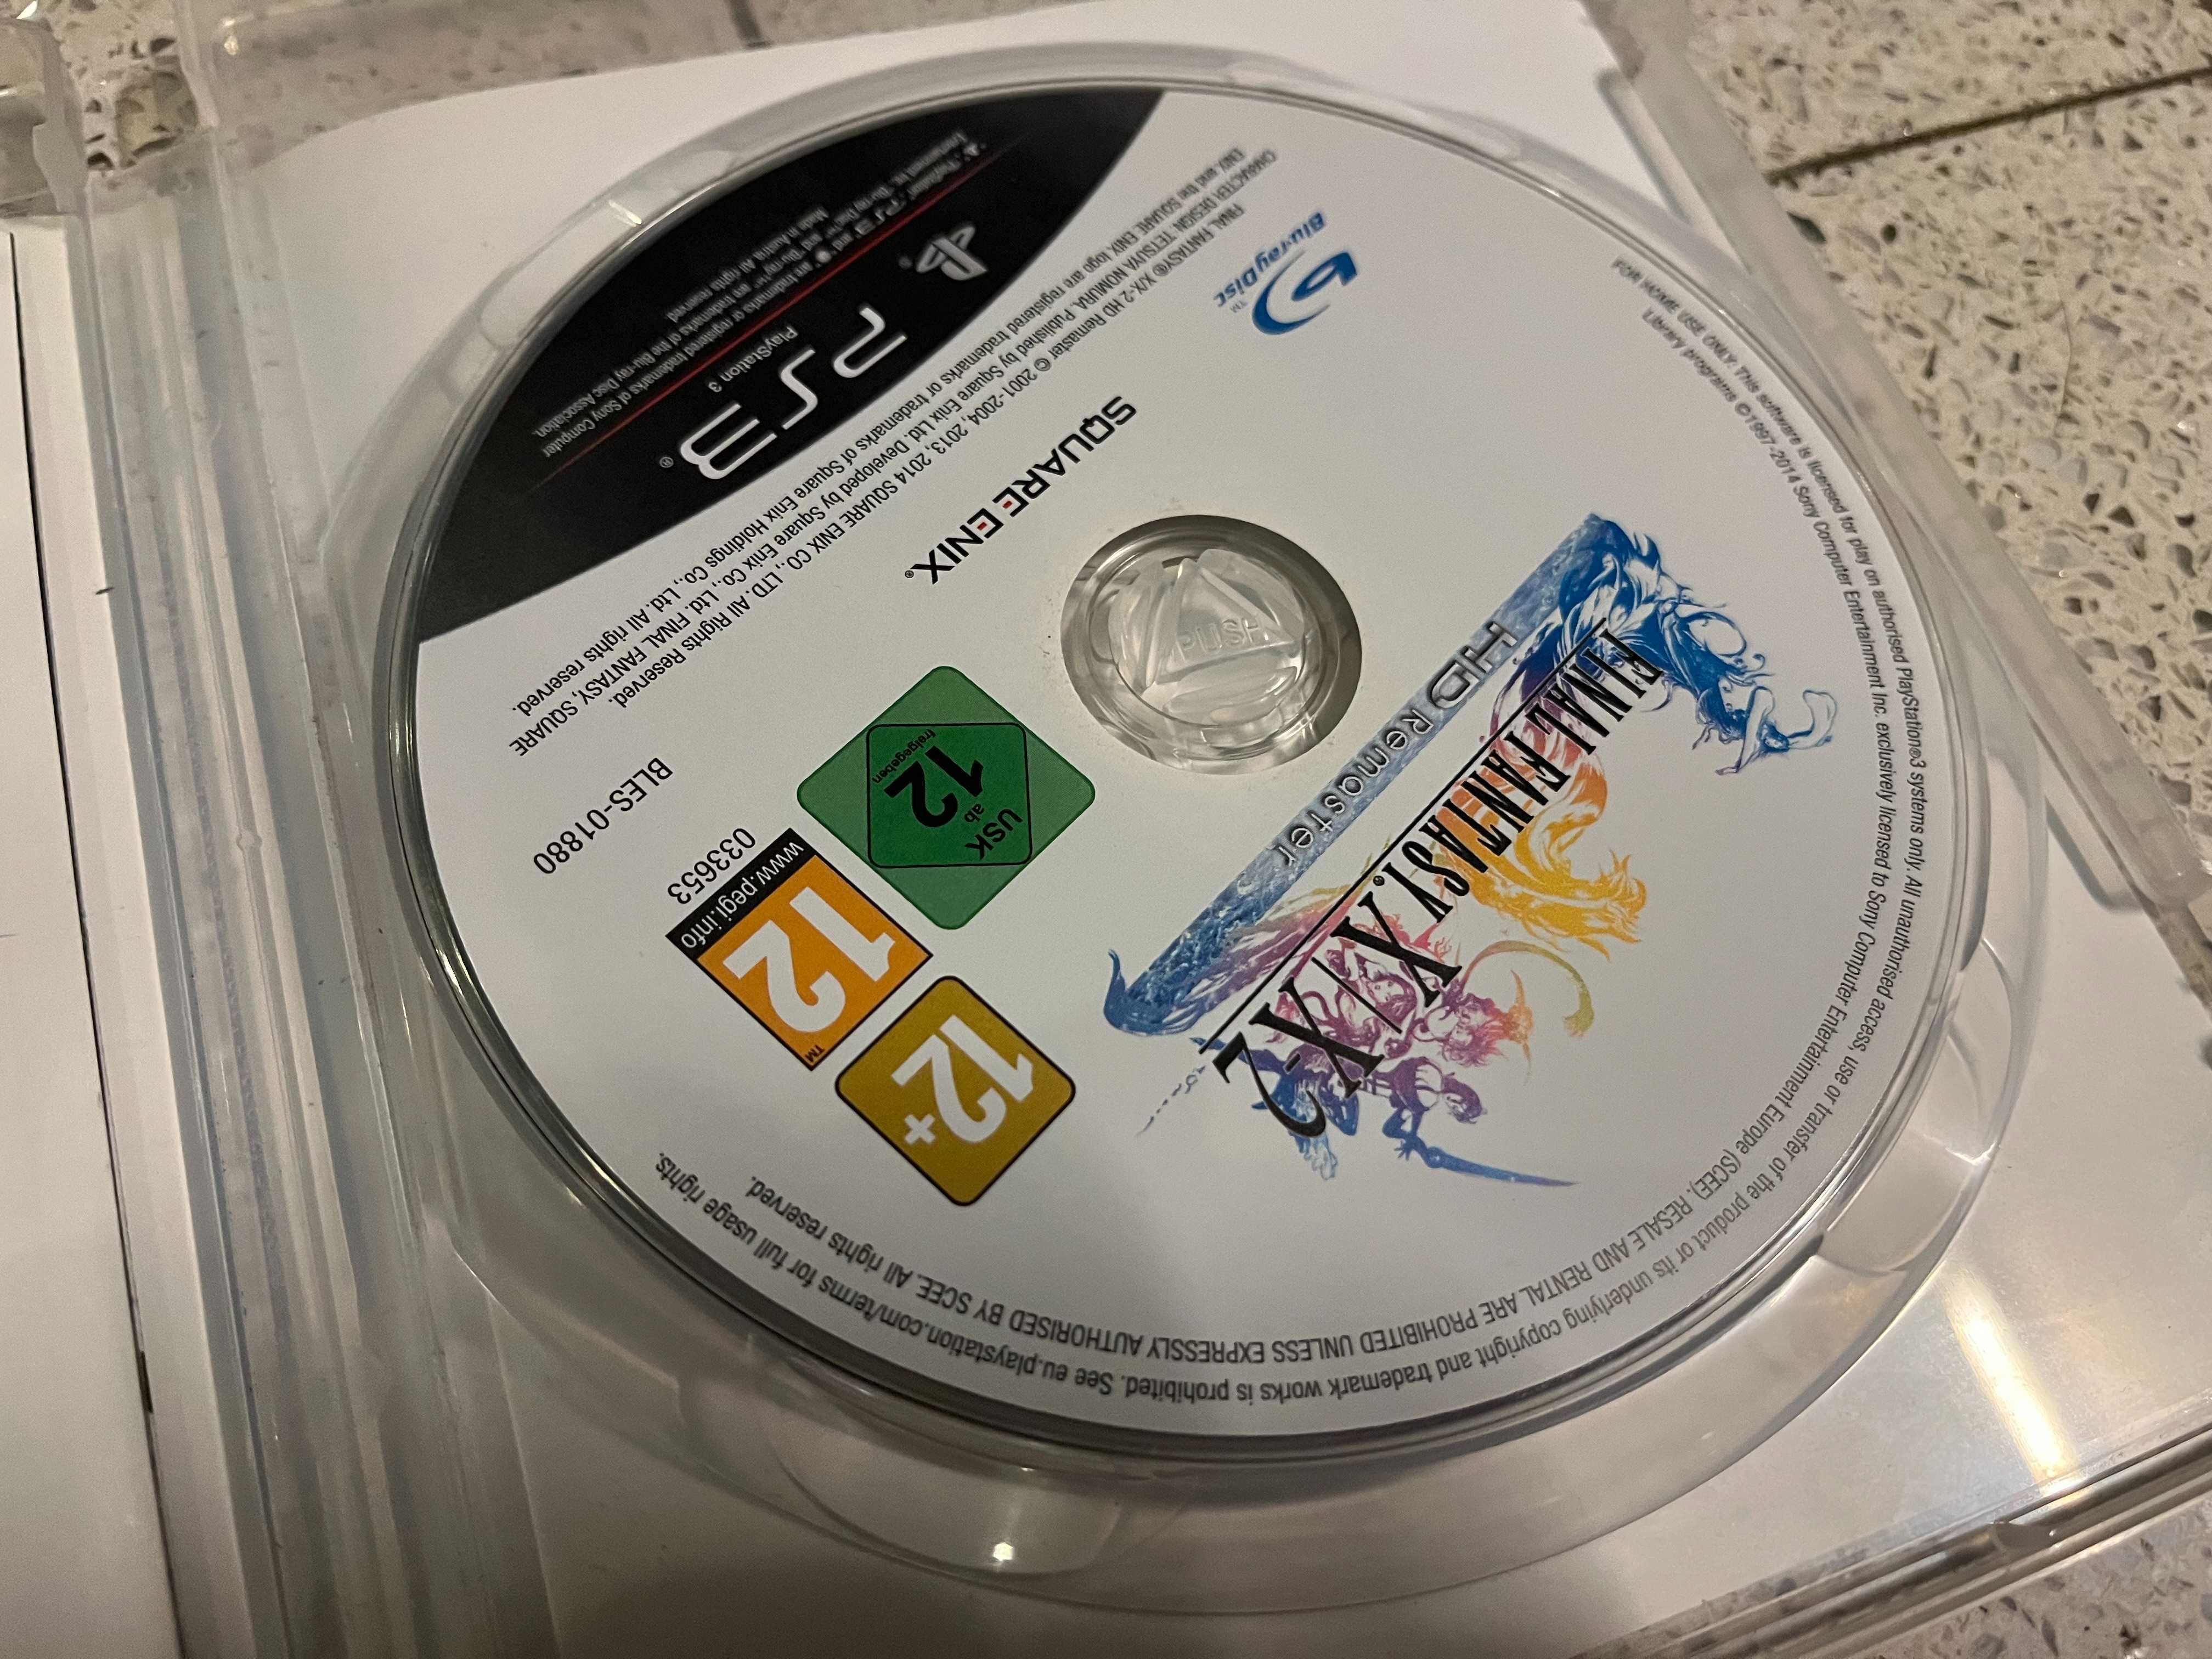 Final Fantasy X/X-2 HD Remaster ( PS3 Playstation 3 )